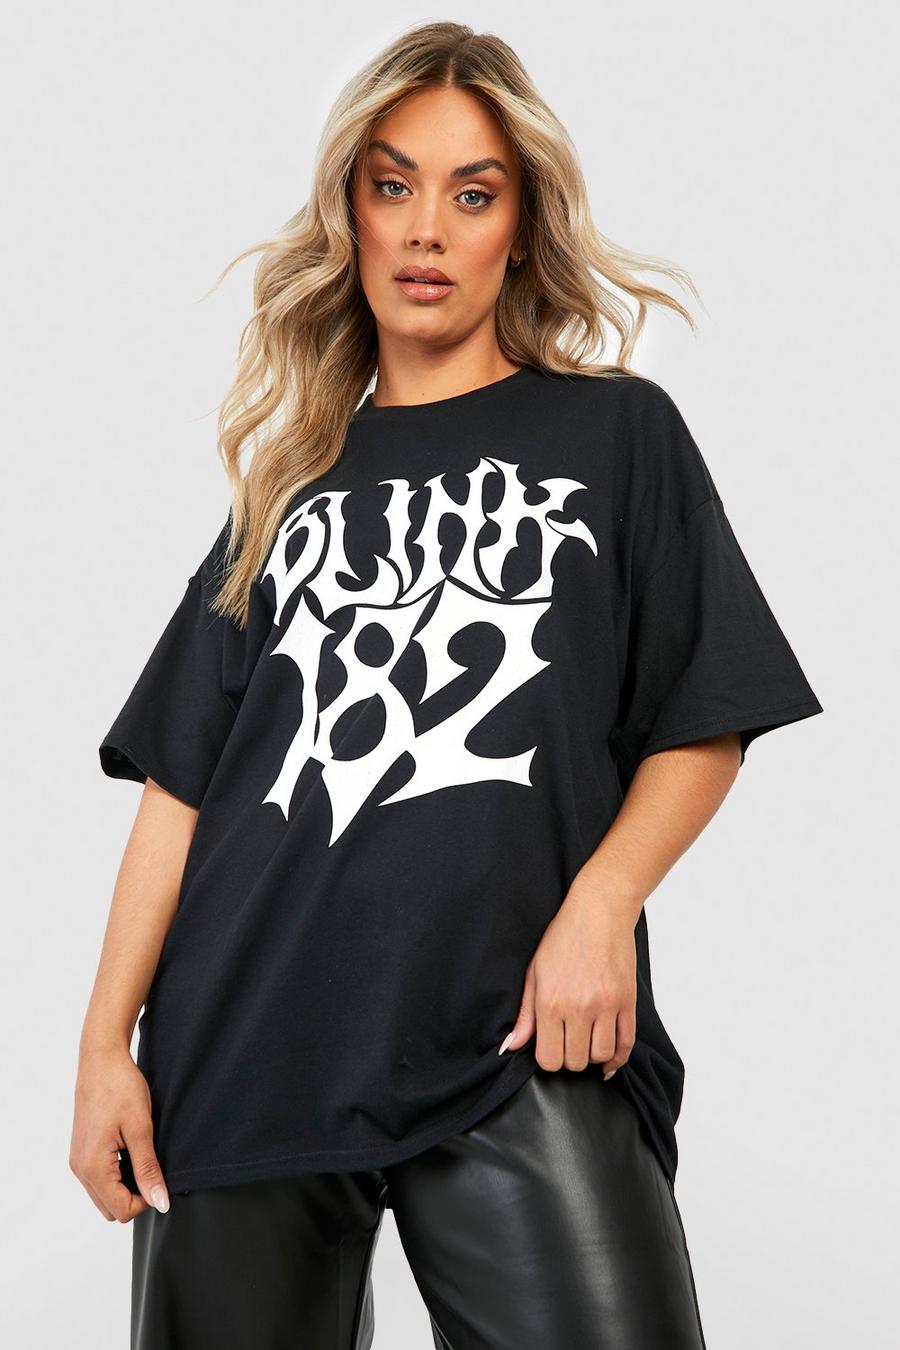 Black Plus Oversized Blink 182 License T-Shirt image number 1